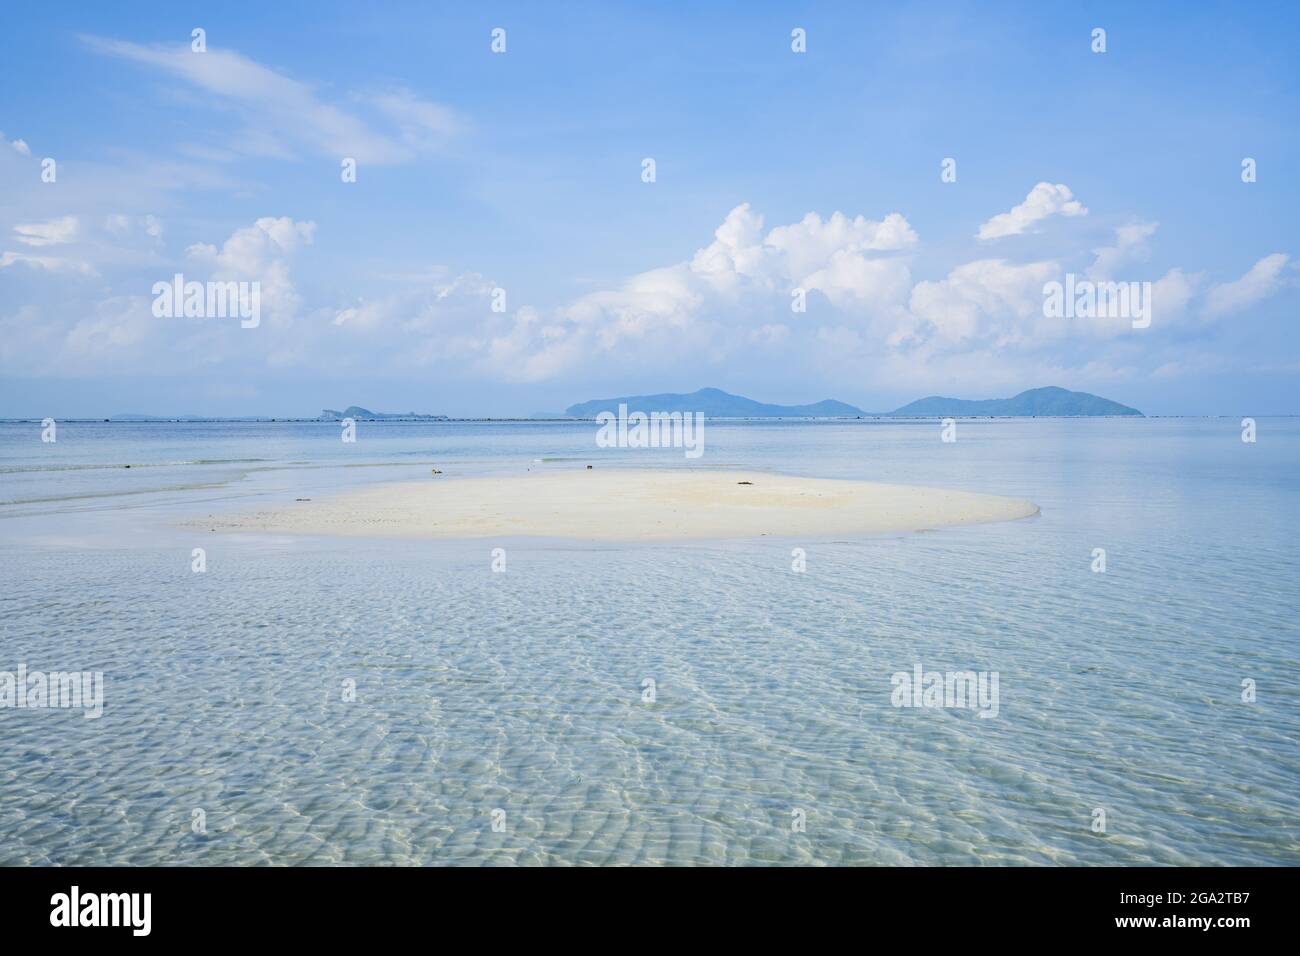 Spiaggia di sabbia bianca laguna sulla costa dell'isola di Ko Samui nel Golfo della Thailandia; Ko Samui, Surat Thani, Thailandia Foto Stock